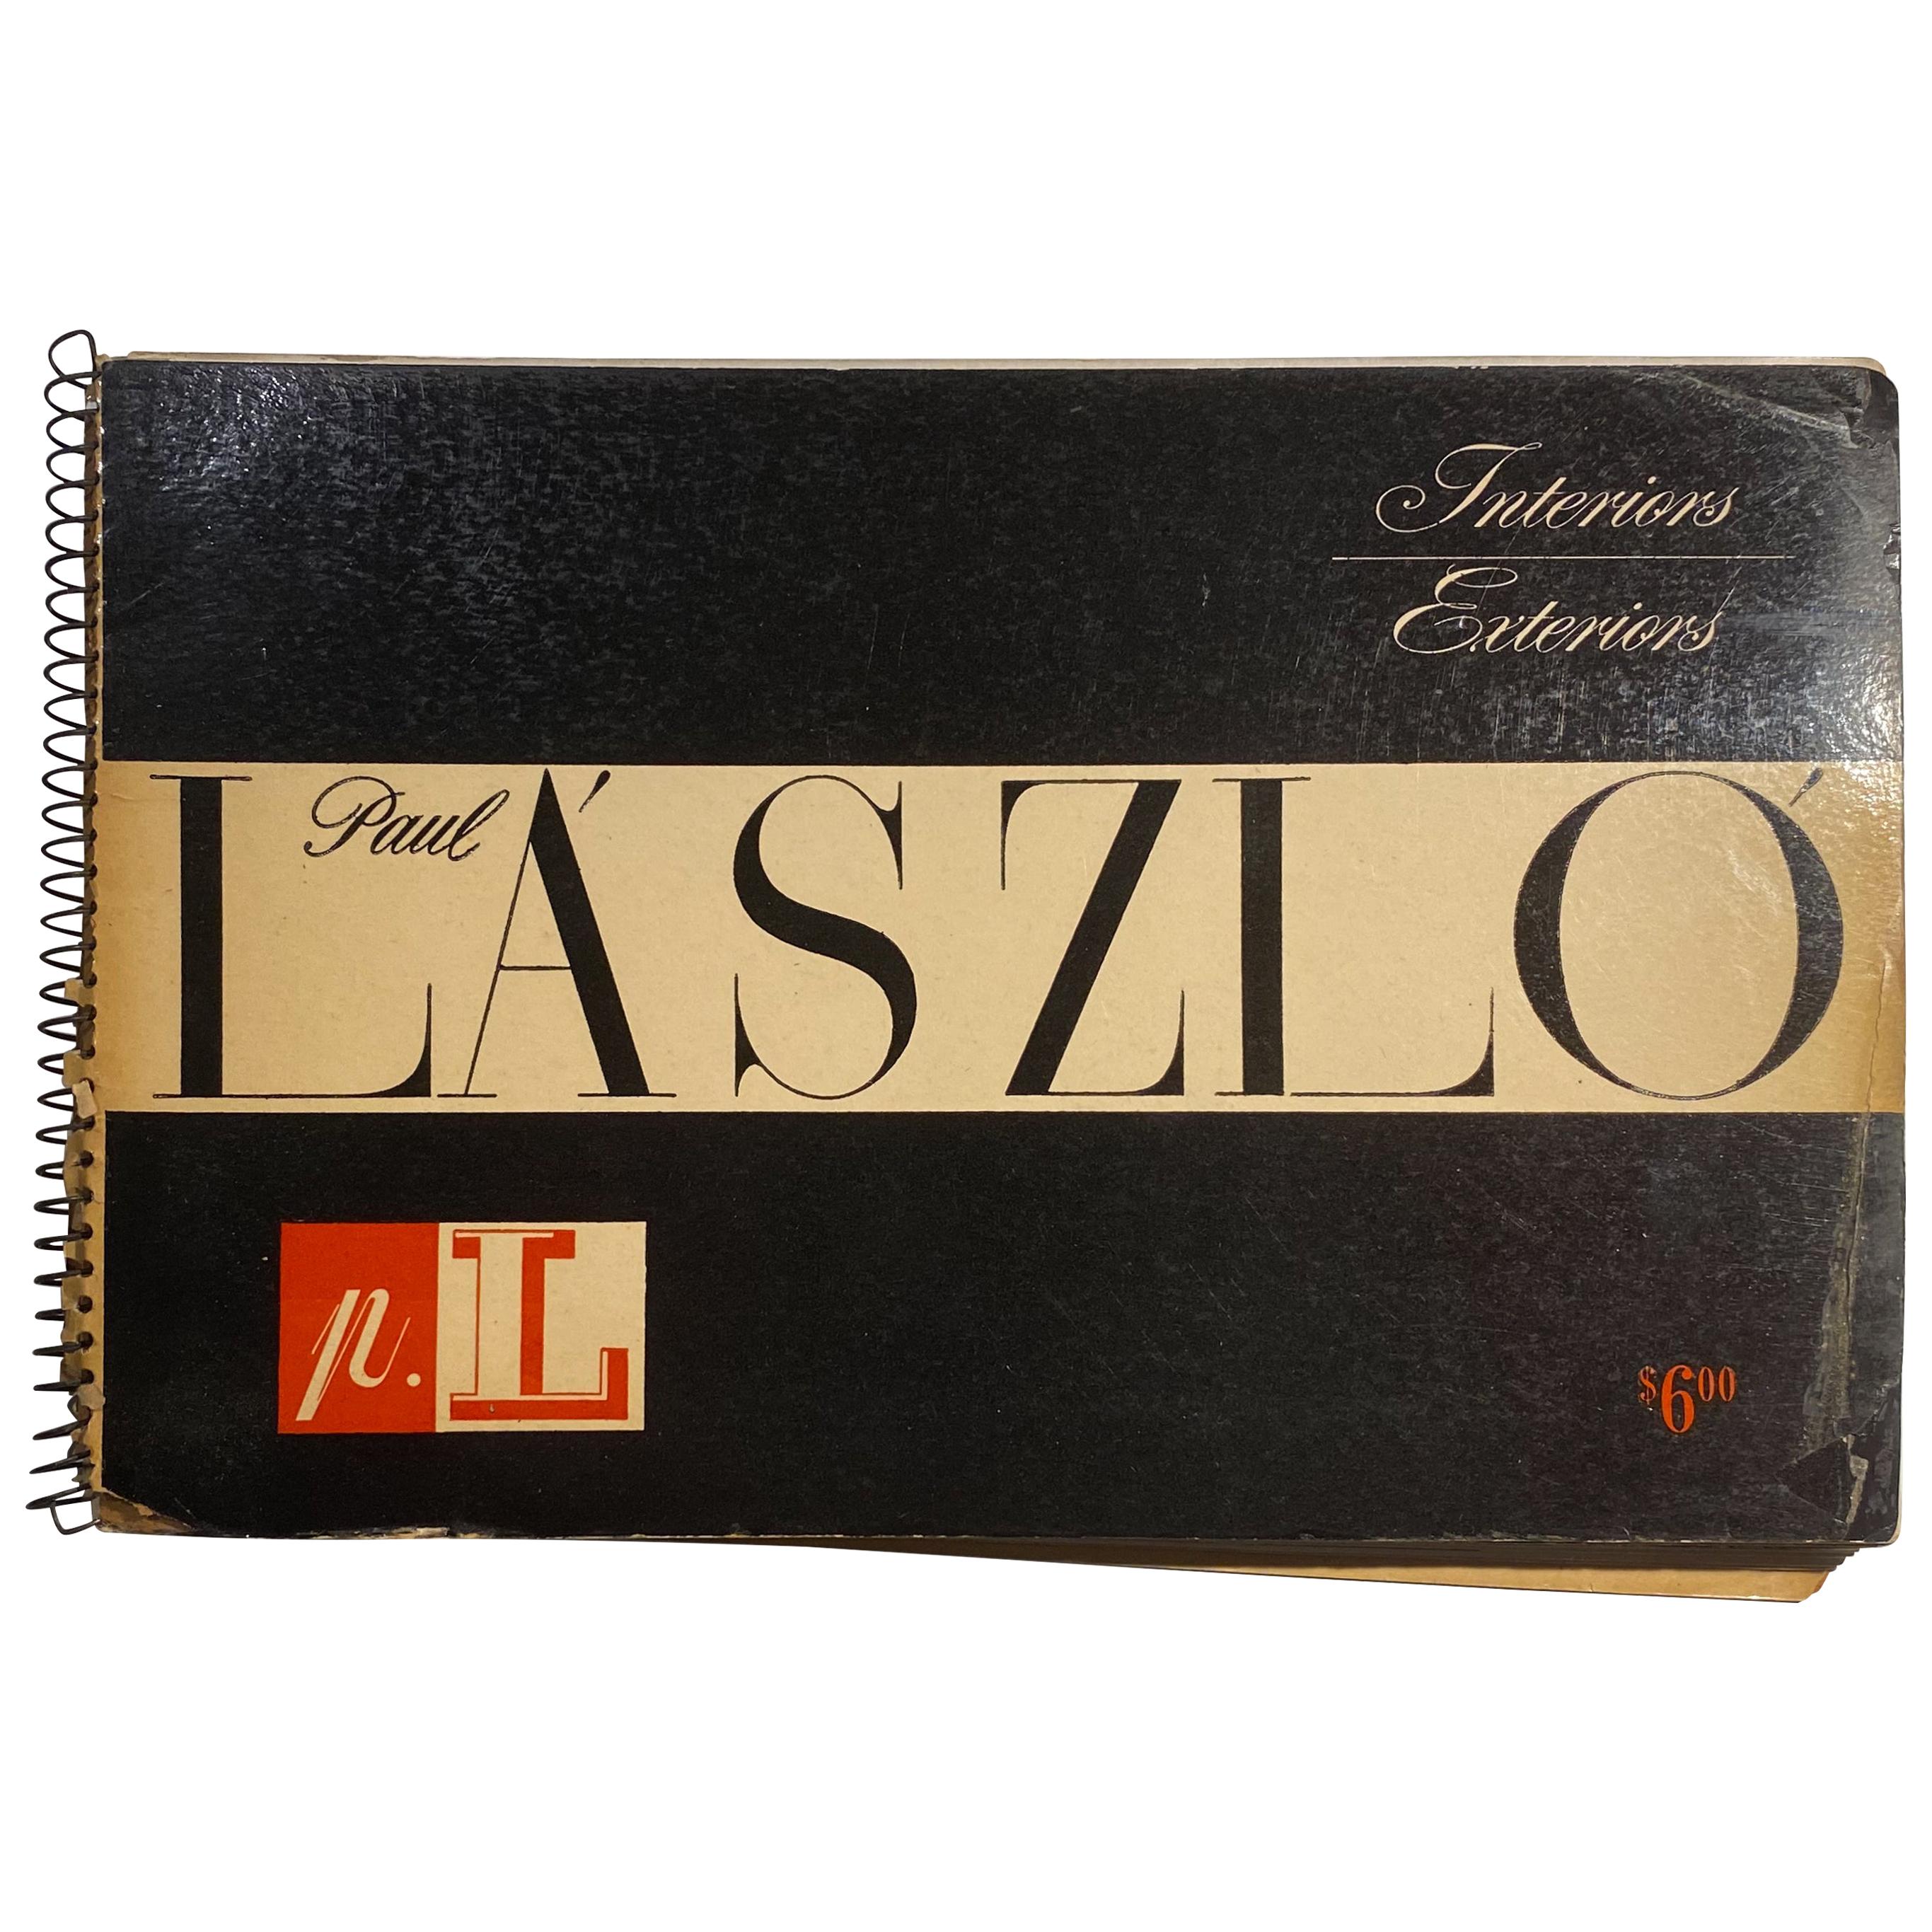 Catalog von Paul Laszlo aus dem Jahr 1947 im Angebot